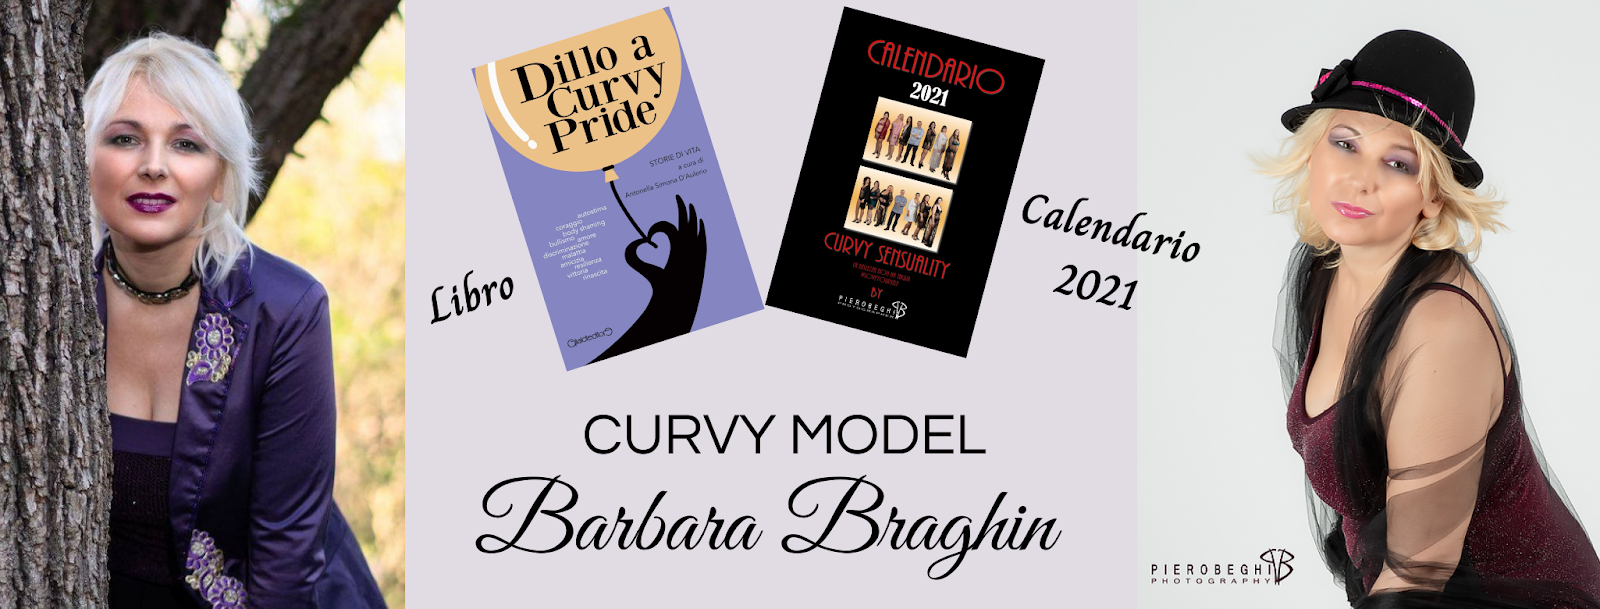 Barbara Braghin Curvy Model